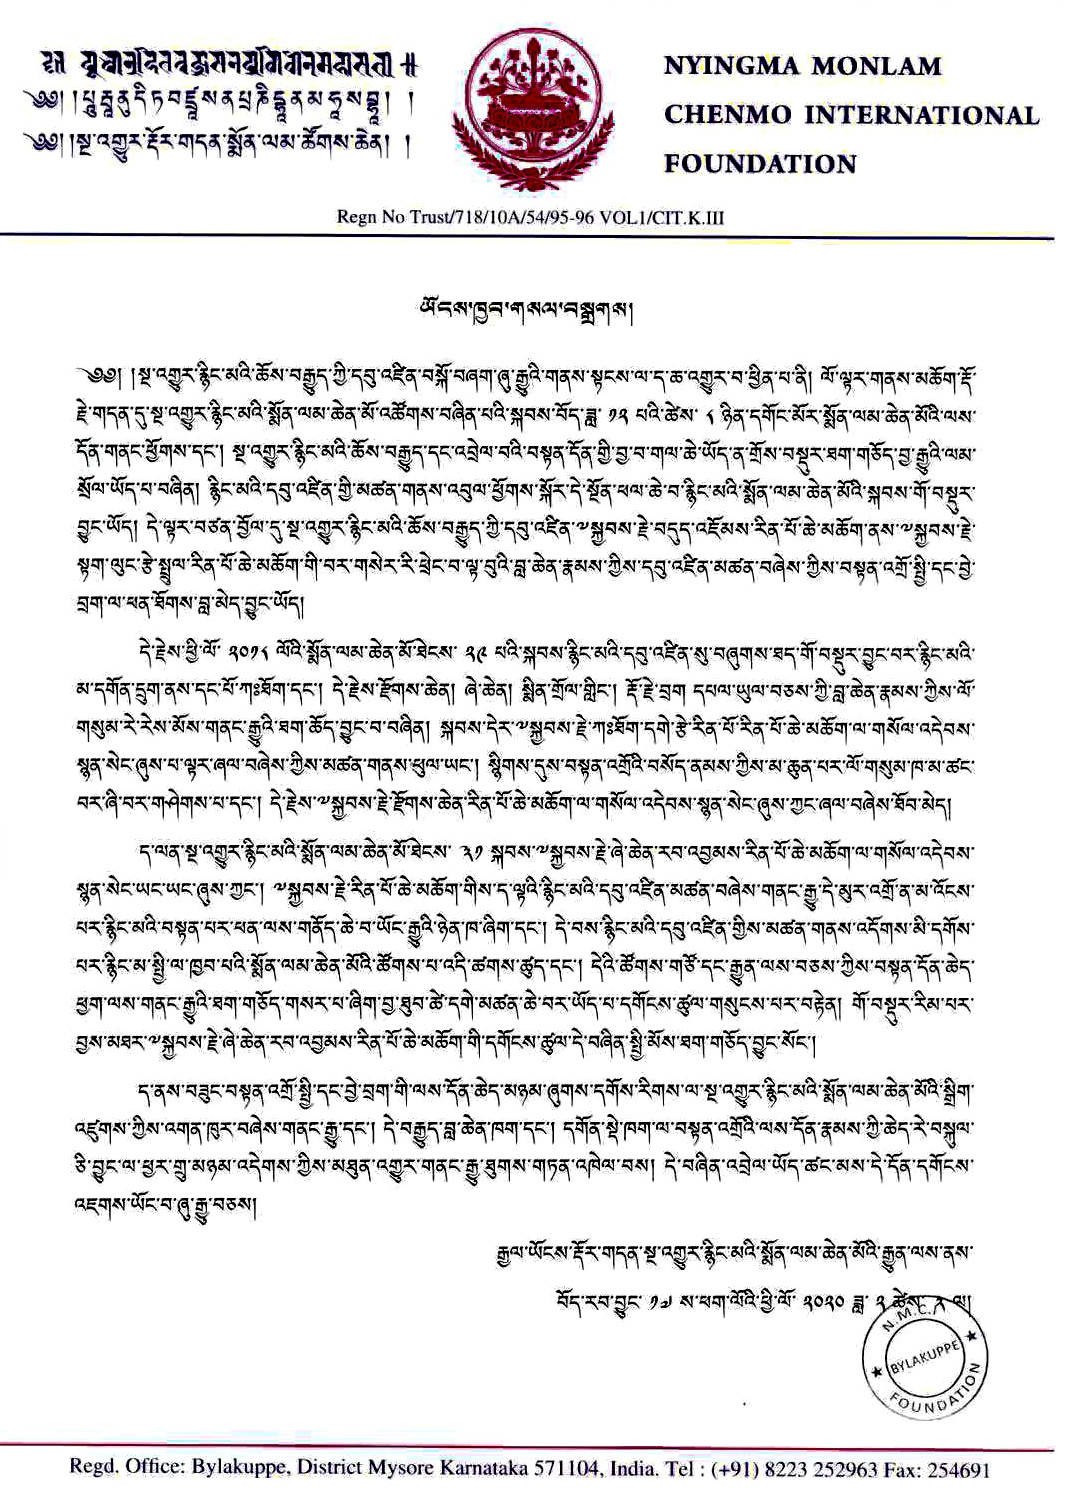 View enlargement of Nyingma Monlam Announcement